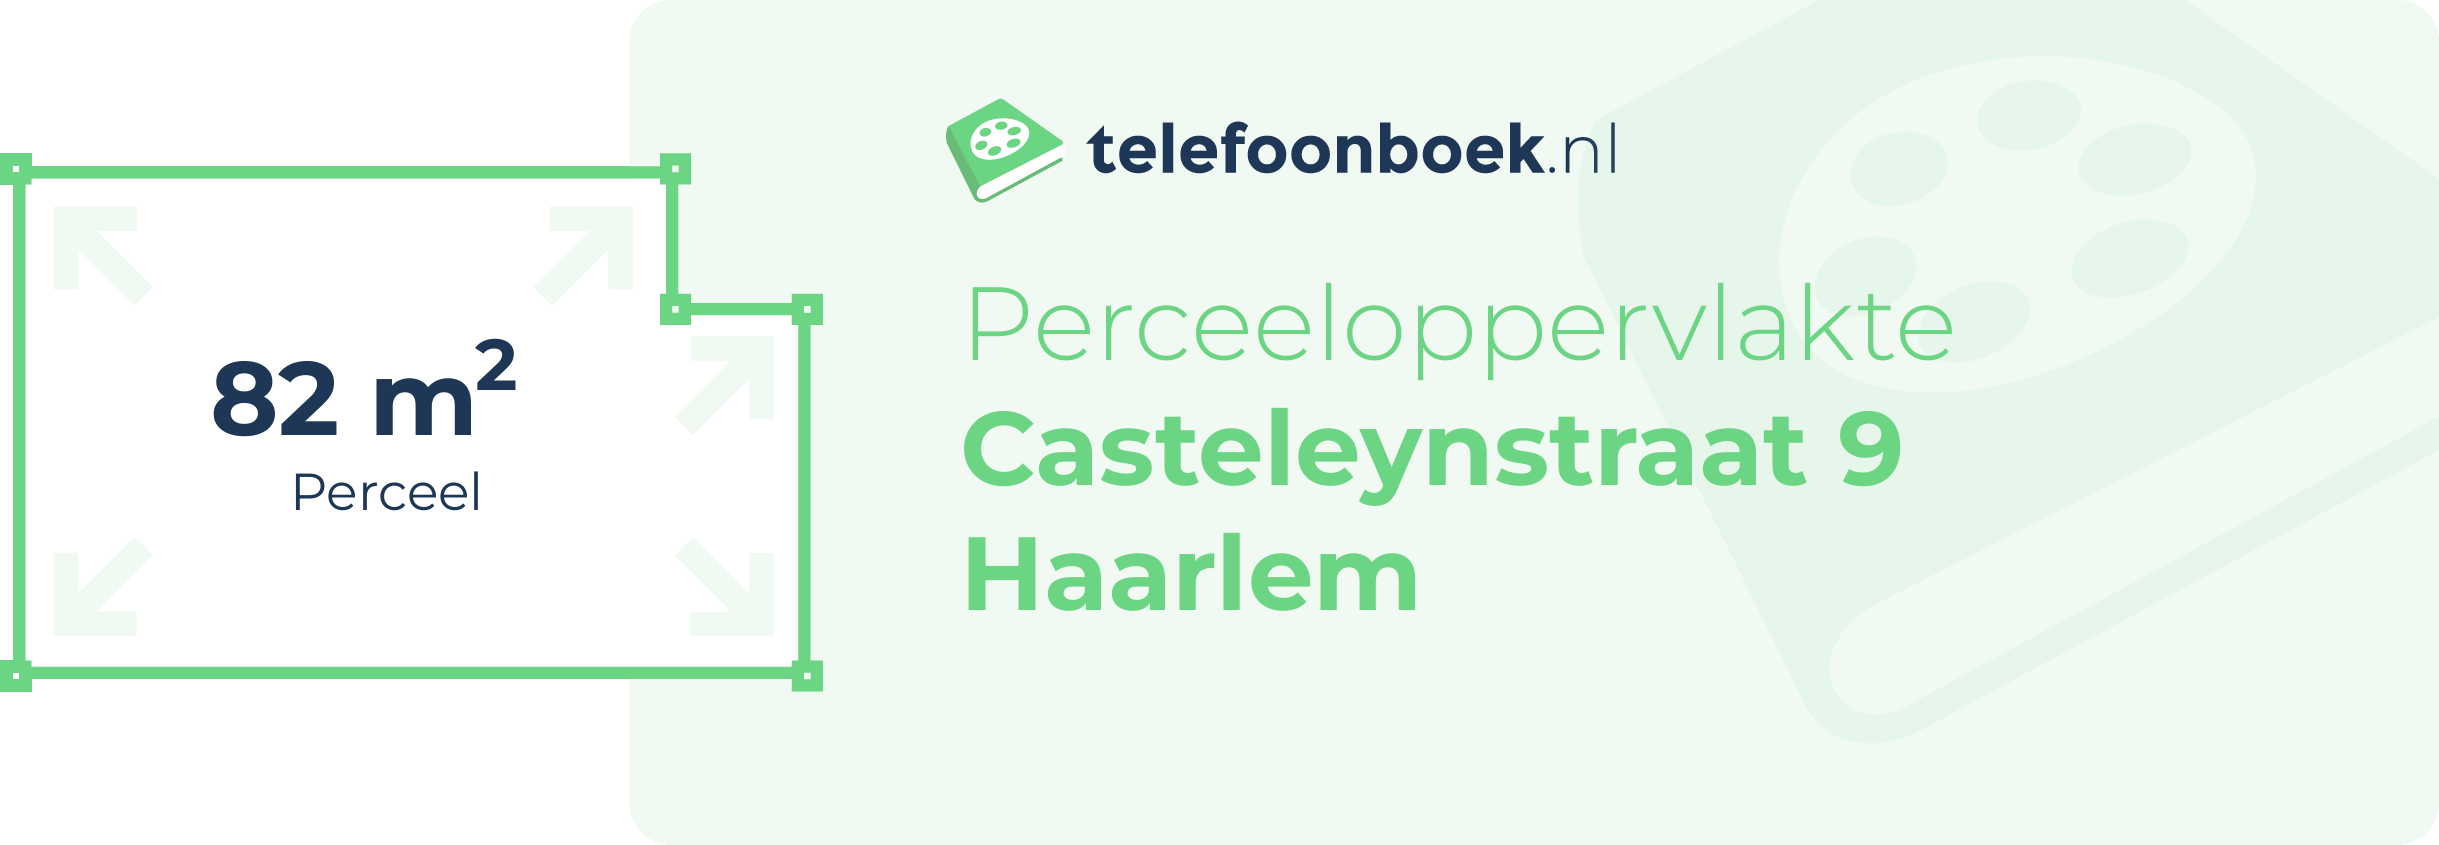 Perceeloppervlakte Casteleynstraat 9 Haarlem